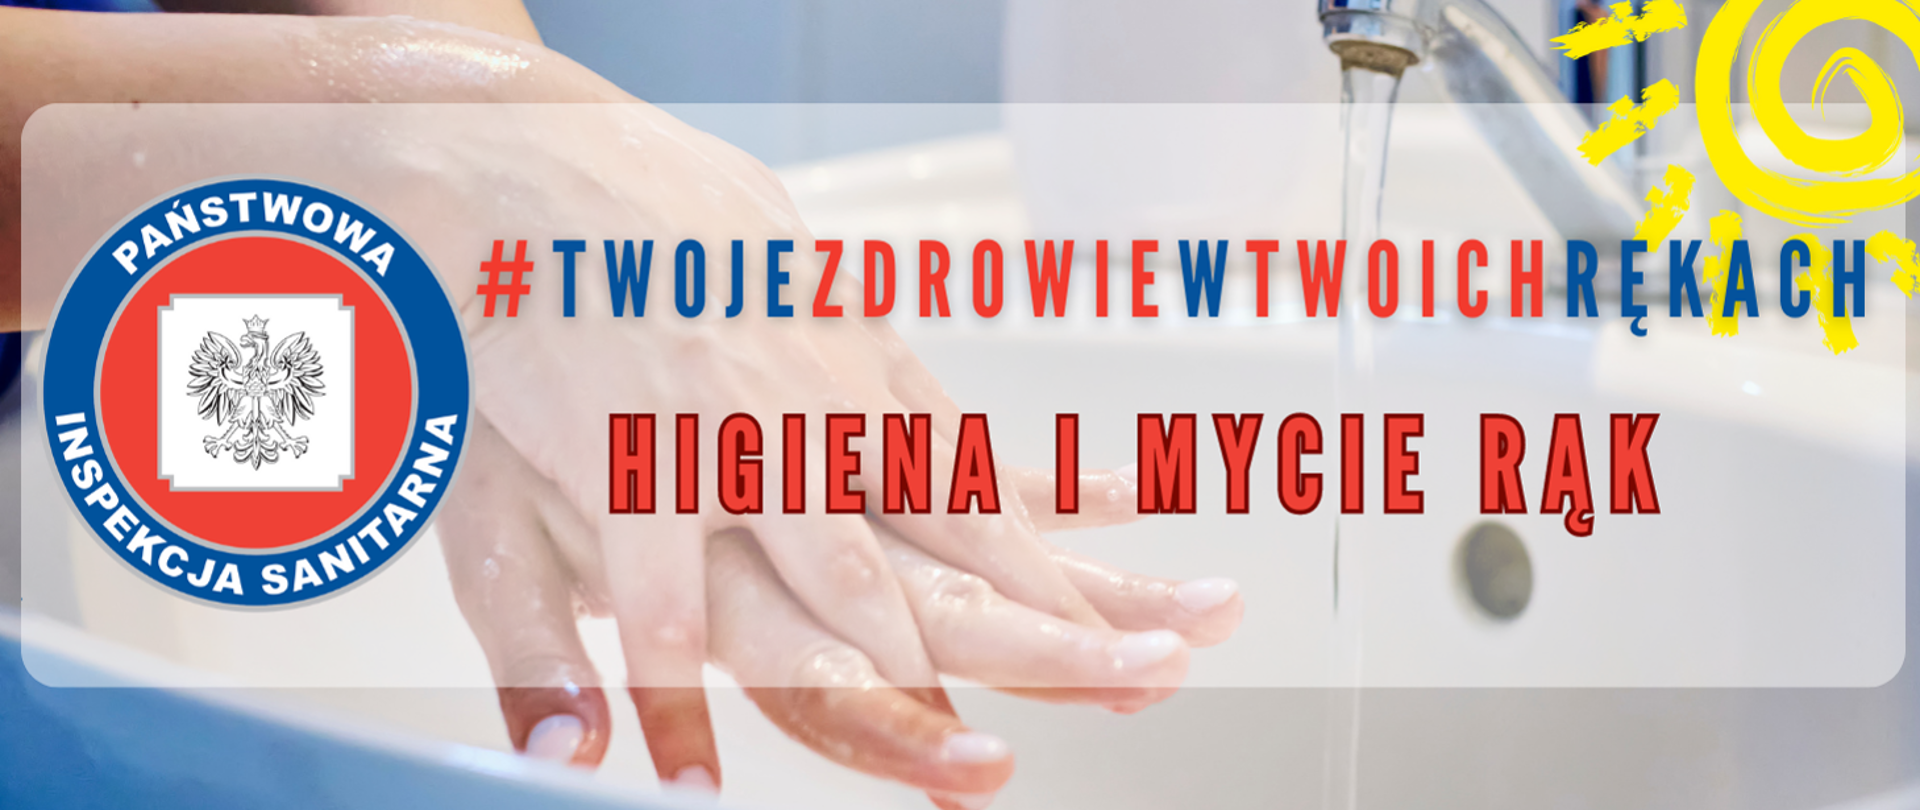 #twojezdrowiewtwoichrękach Higieana i mycie rąk